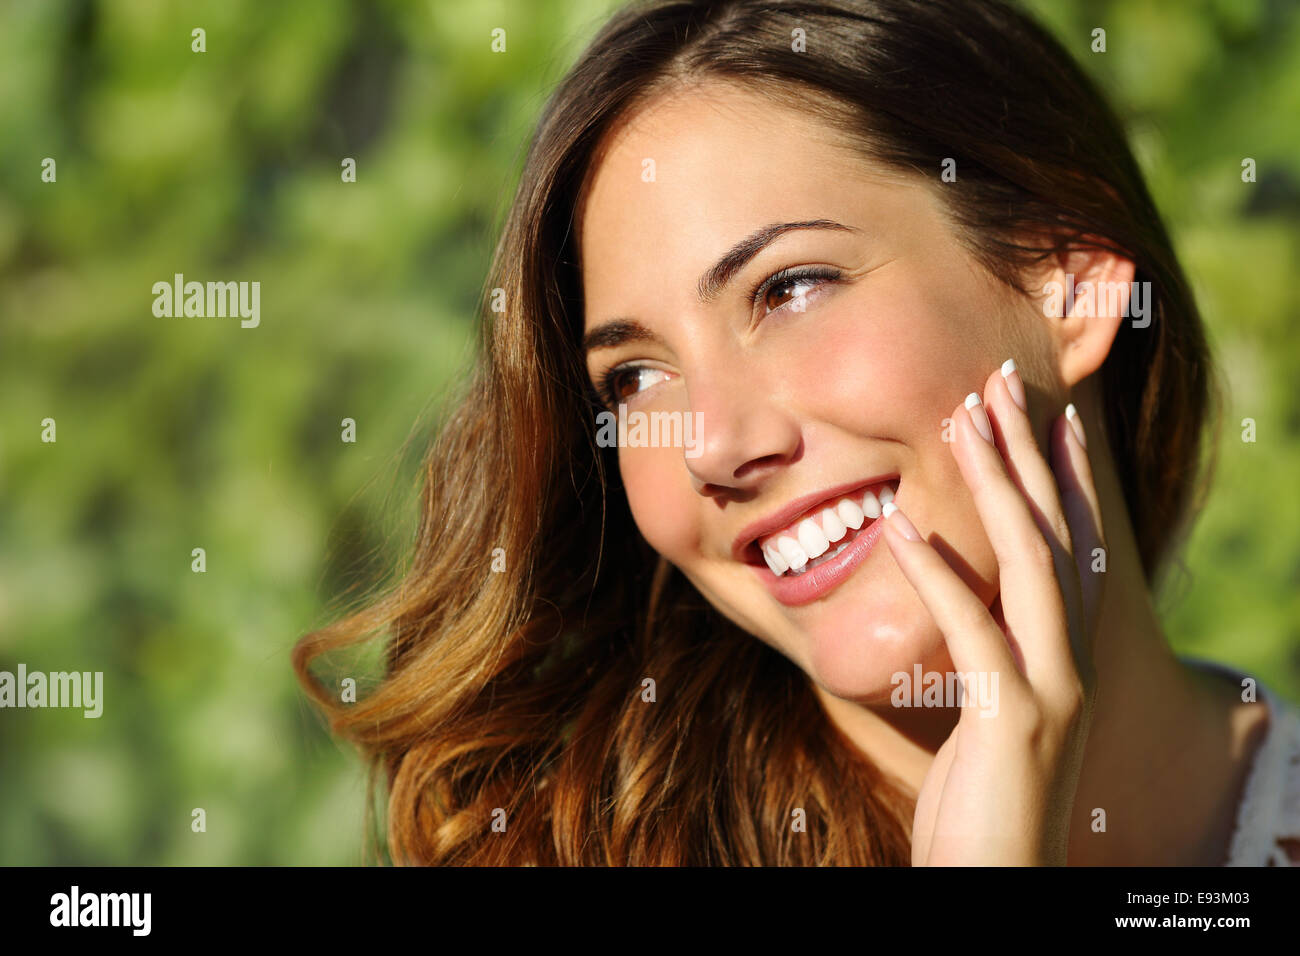 Mujer de belleza con una sonrisa perfecta y dientes blancos con un fondo verde Foto de stock